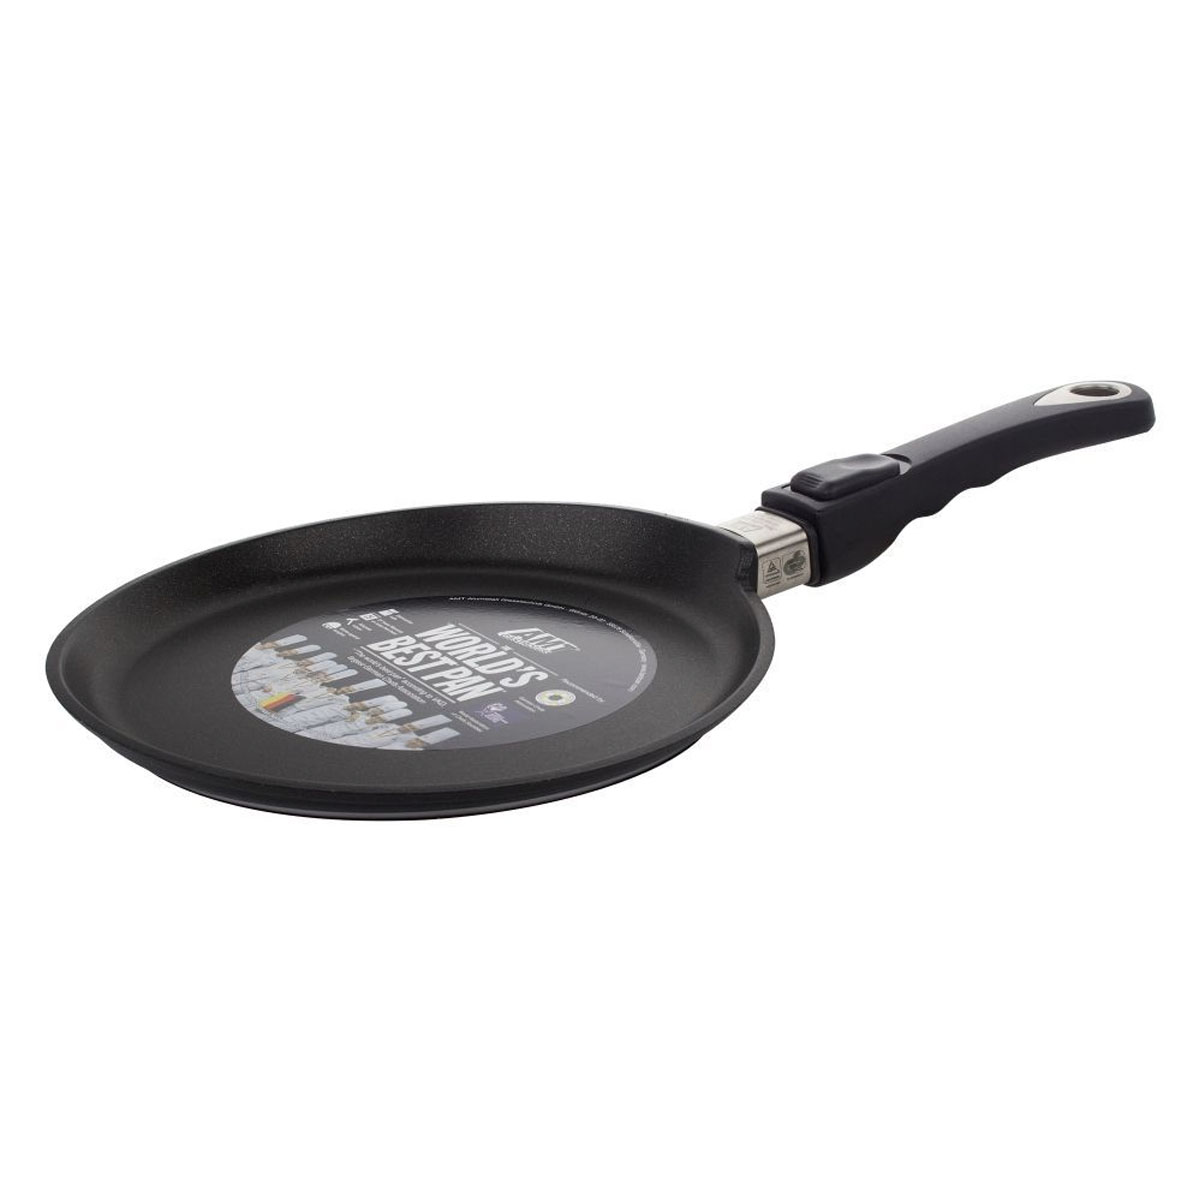 Сковорода блинная AMT Frying Pans 24см сковорода со съемной ручкой 20 см skk durit resist 075204